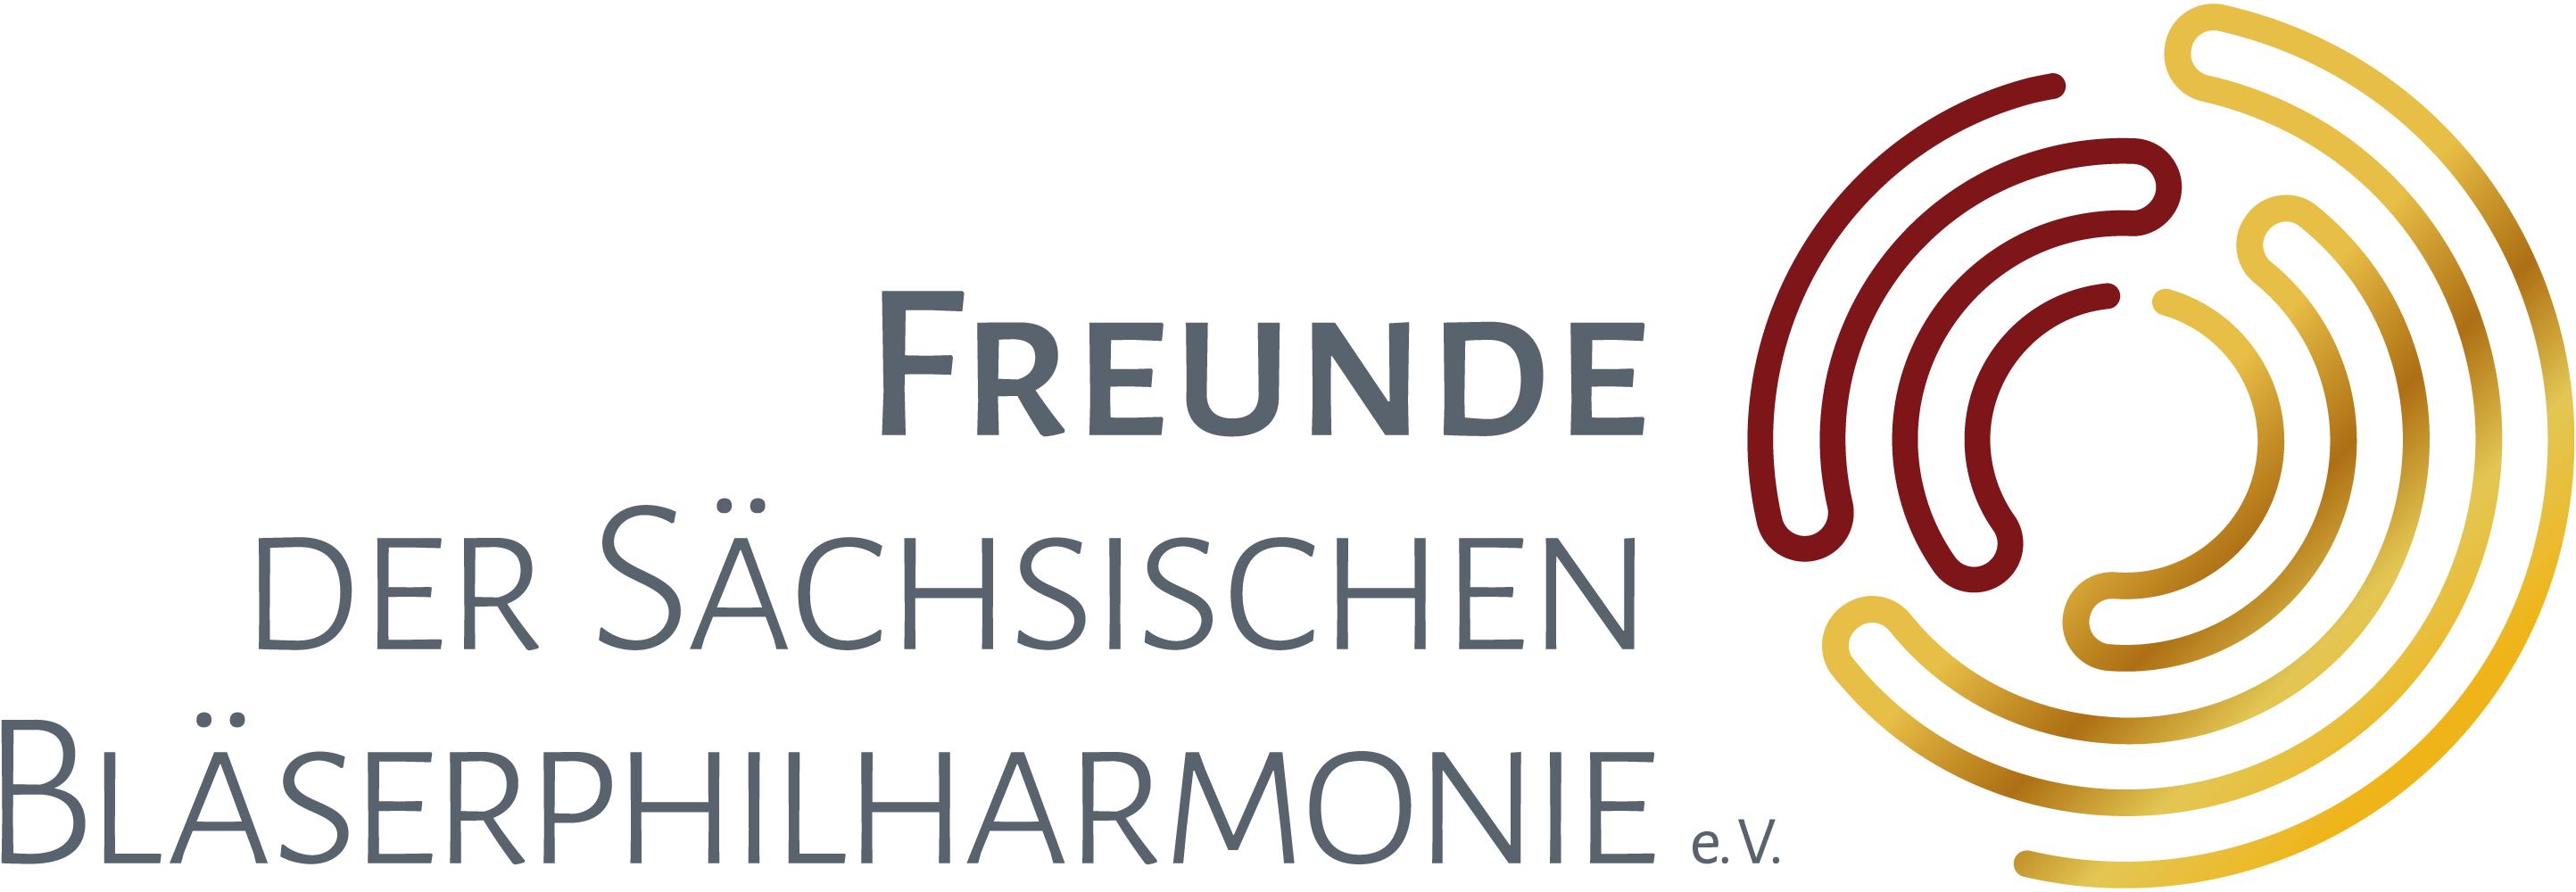 logo_freunde_der_sbp_rgb_kopie | Sächsische Bläserphilharmonie | Der Förderverein